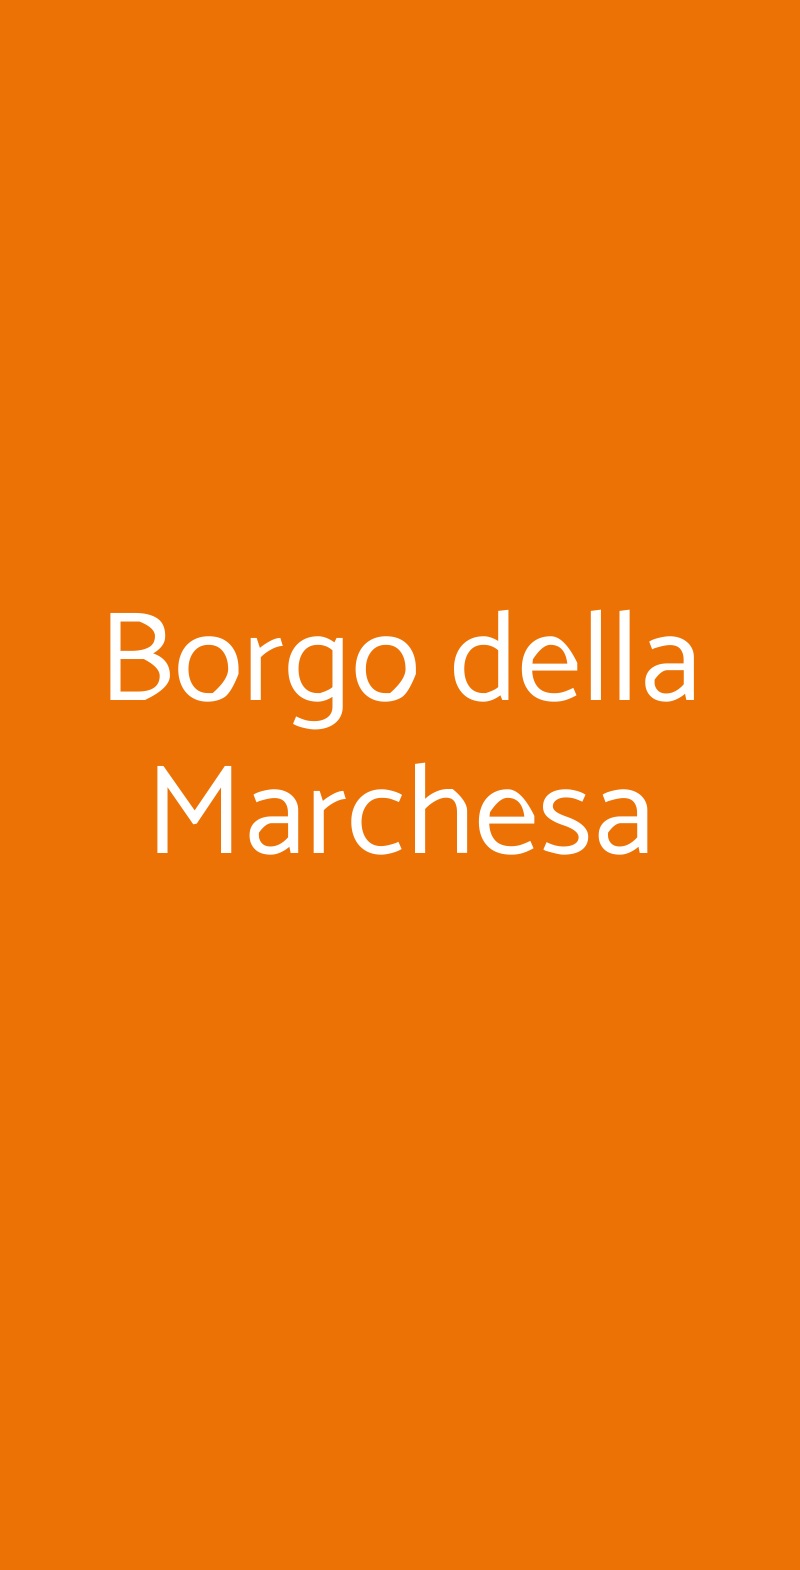 Borgo della Marchesa Roma menù 1 pagina